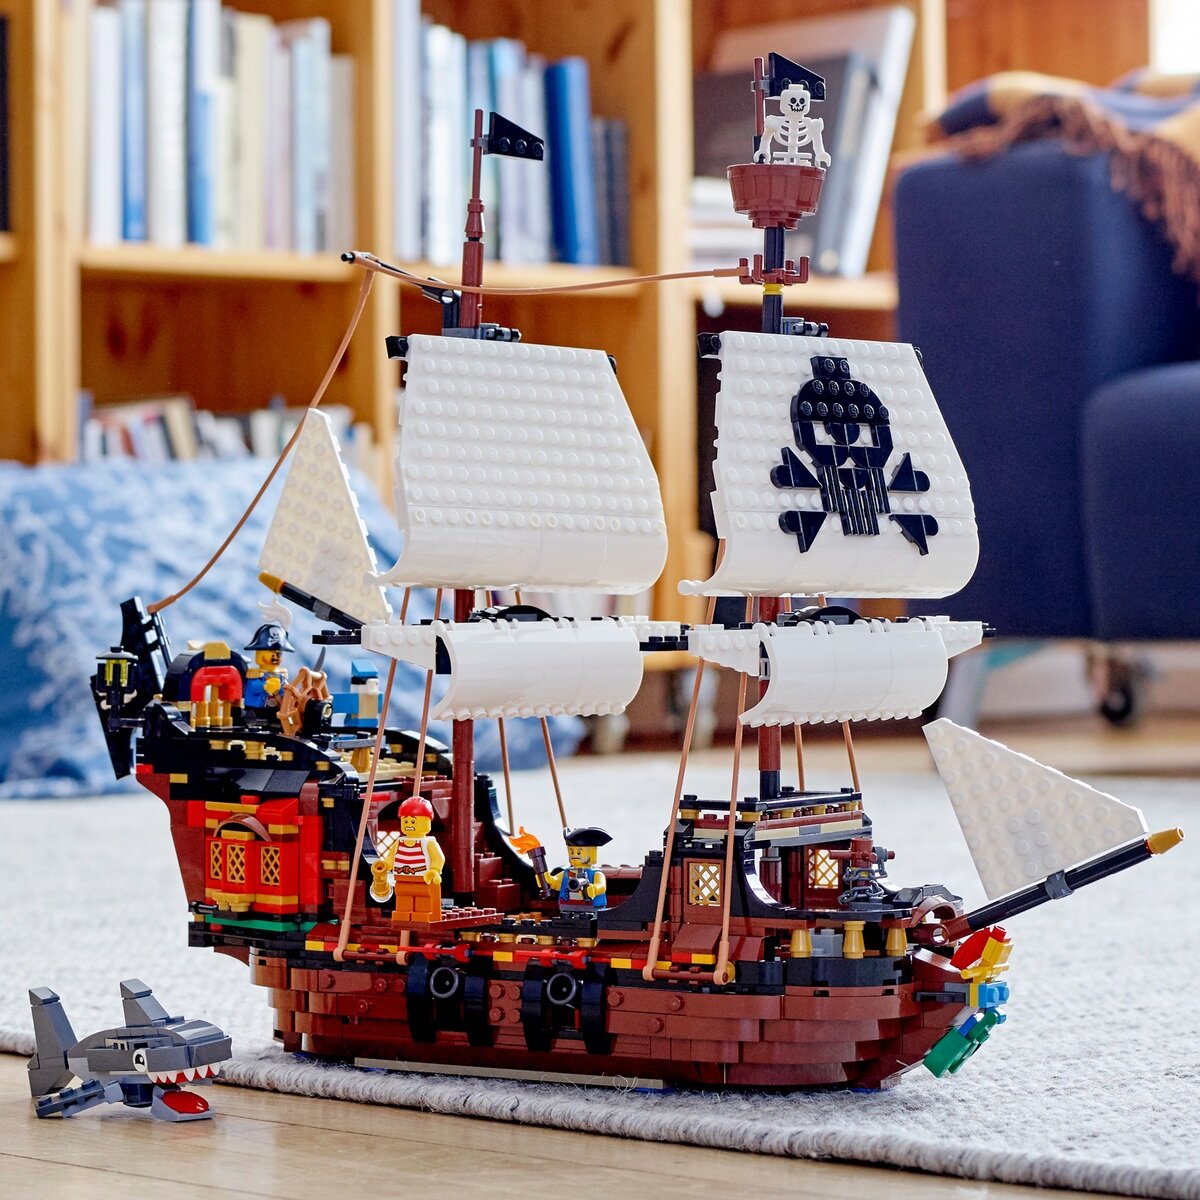 レゴ クリエーター 3-in-1 海賊船 | Costco Japan